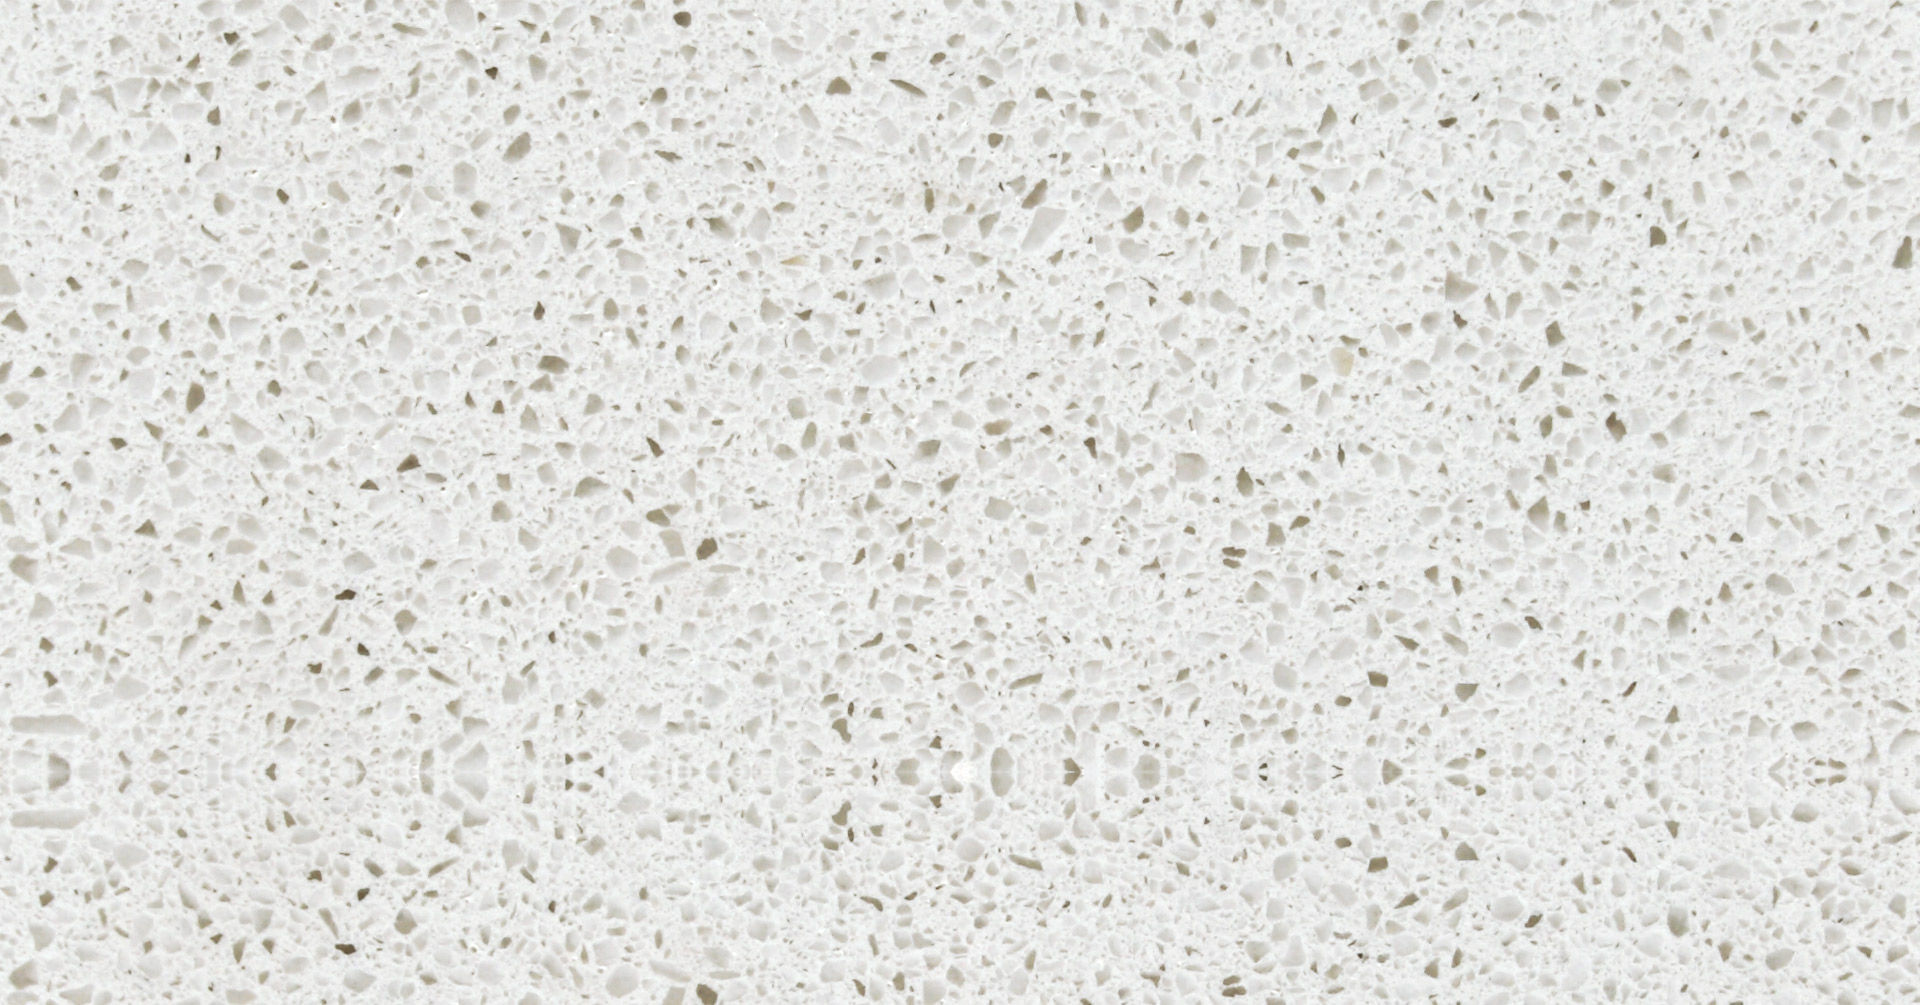 Iced White Quartz Stone